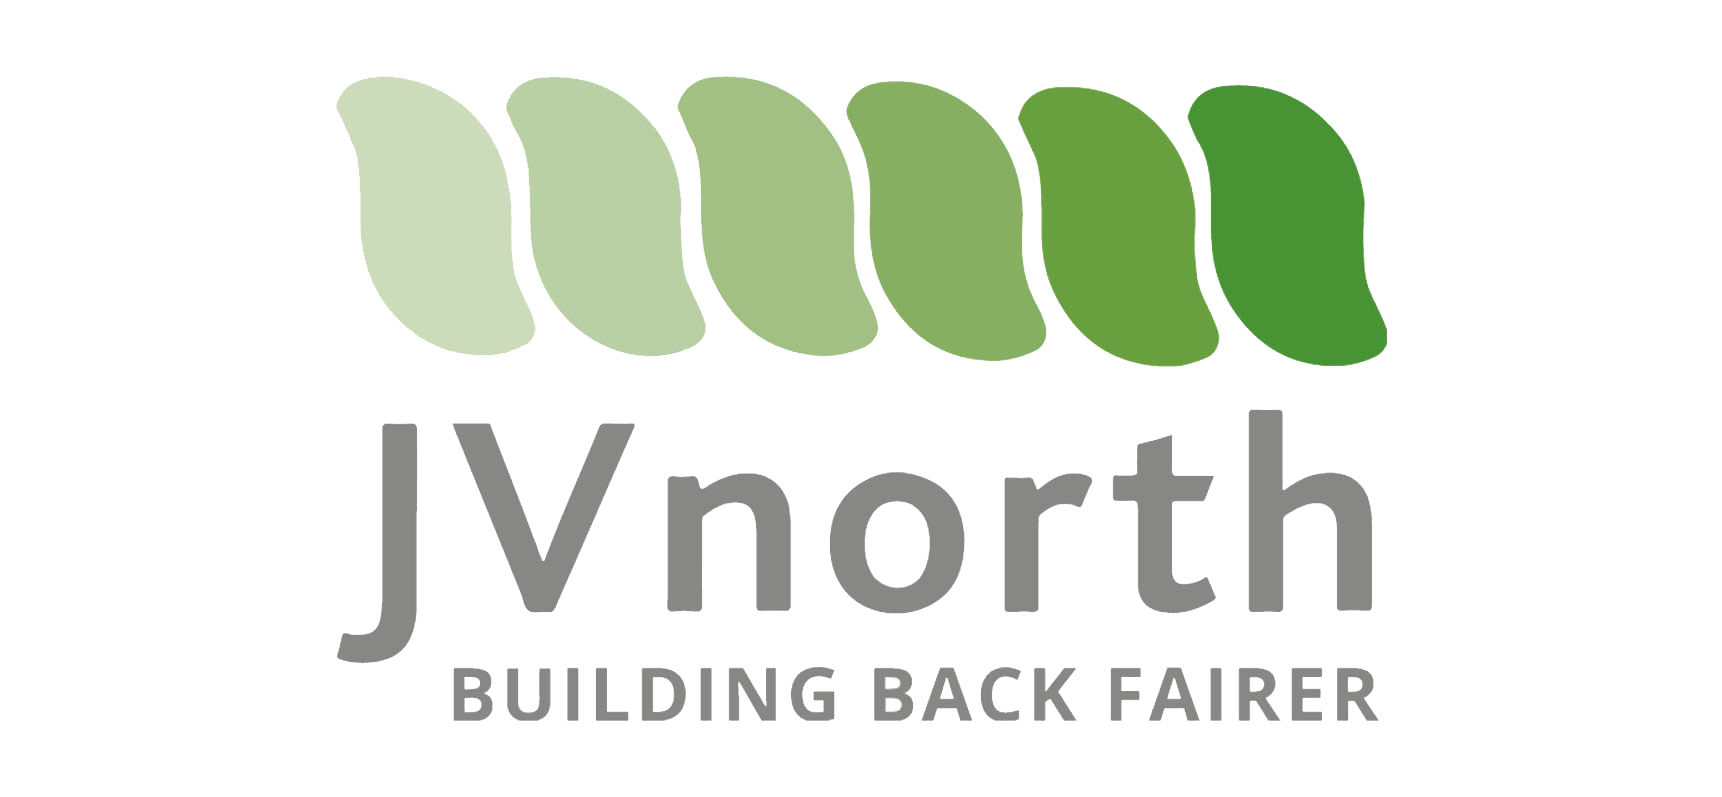 JV north logo